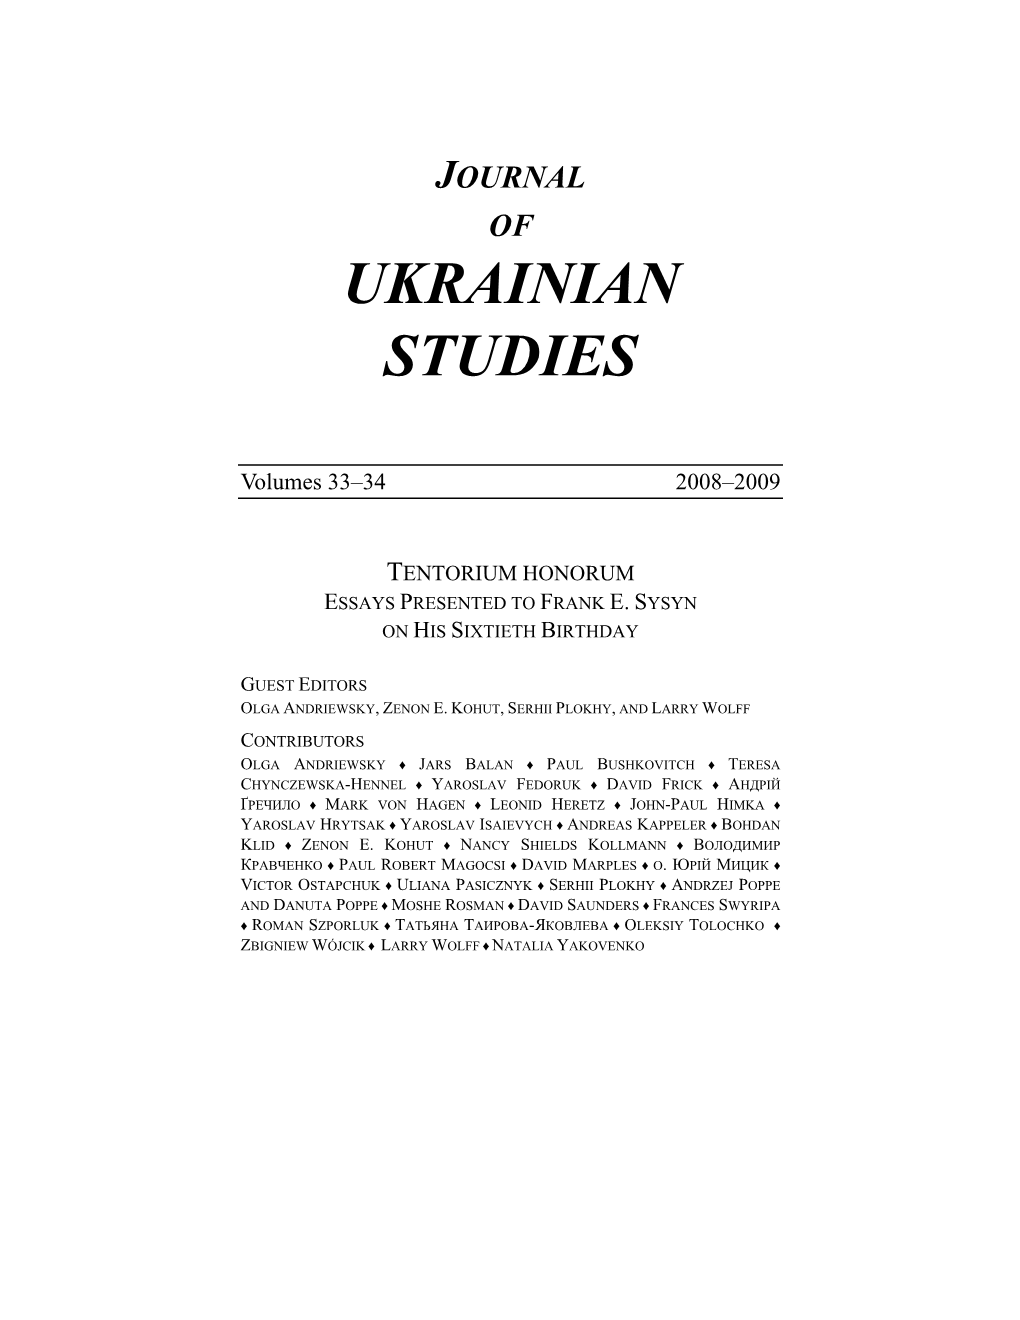 CIUS JOURNAL of UKRAINIAN STUDIES Vols. 33-34